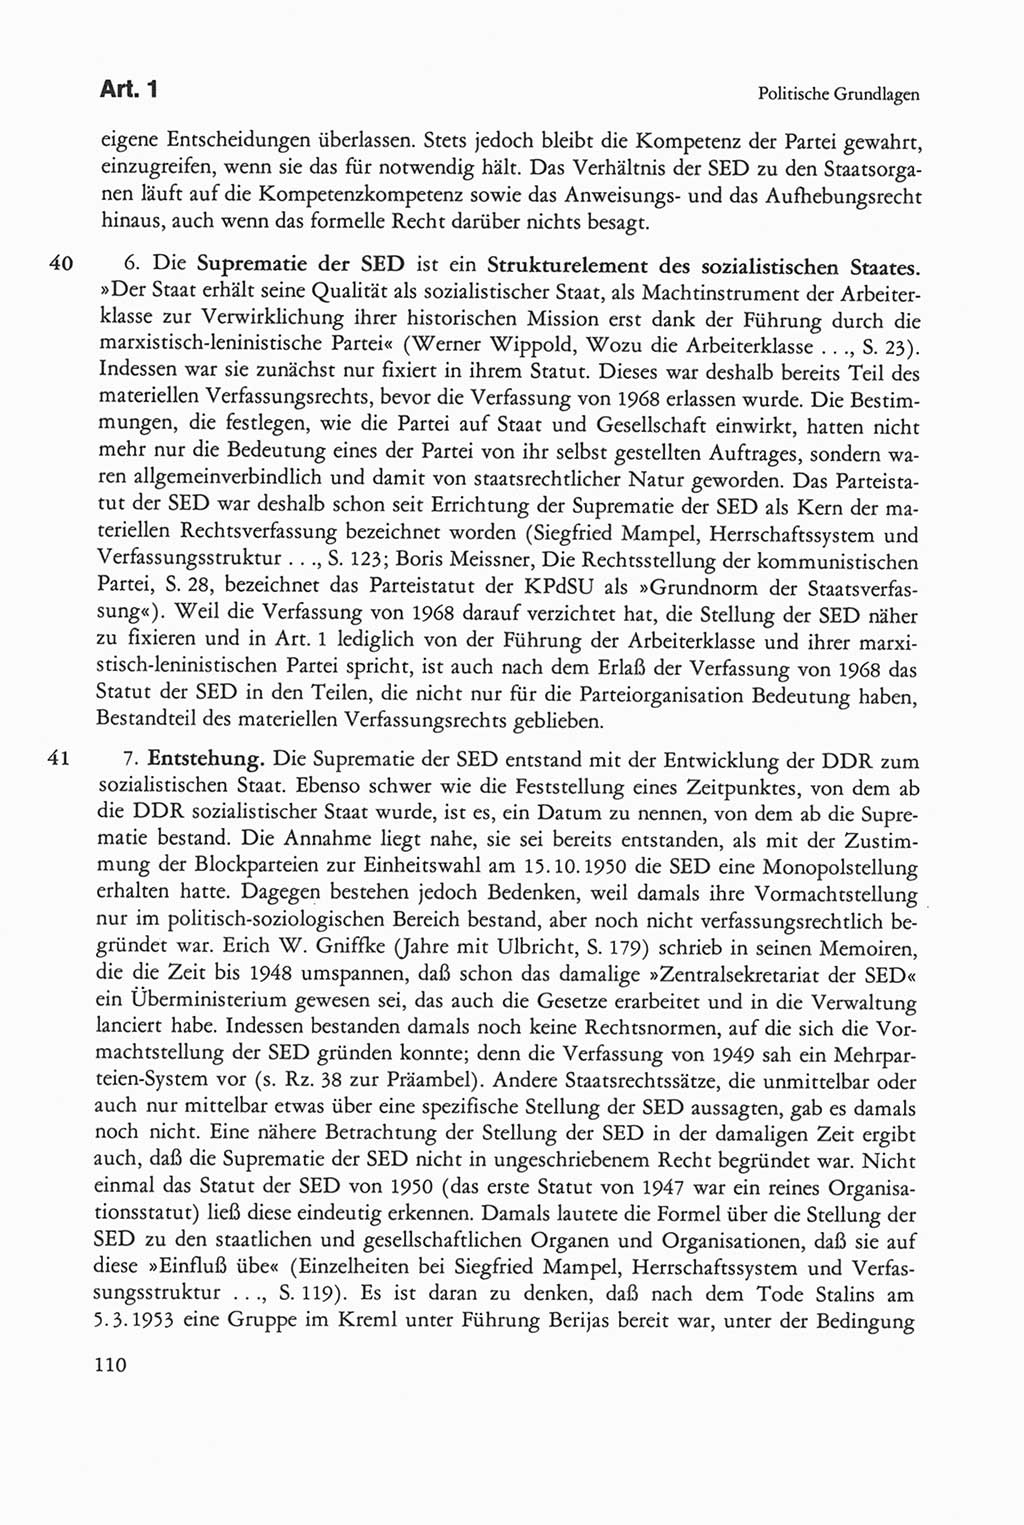 Die sozialistische Verfassung der Deutschen Demokratischen Republik (DDR), Kommentar 1982, Seite 110 (Soz. Verf. DDR Komm. 1982, S. 110)